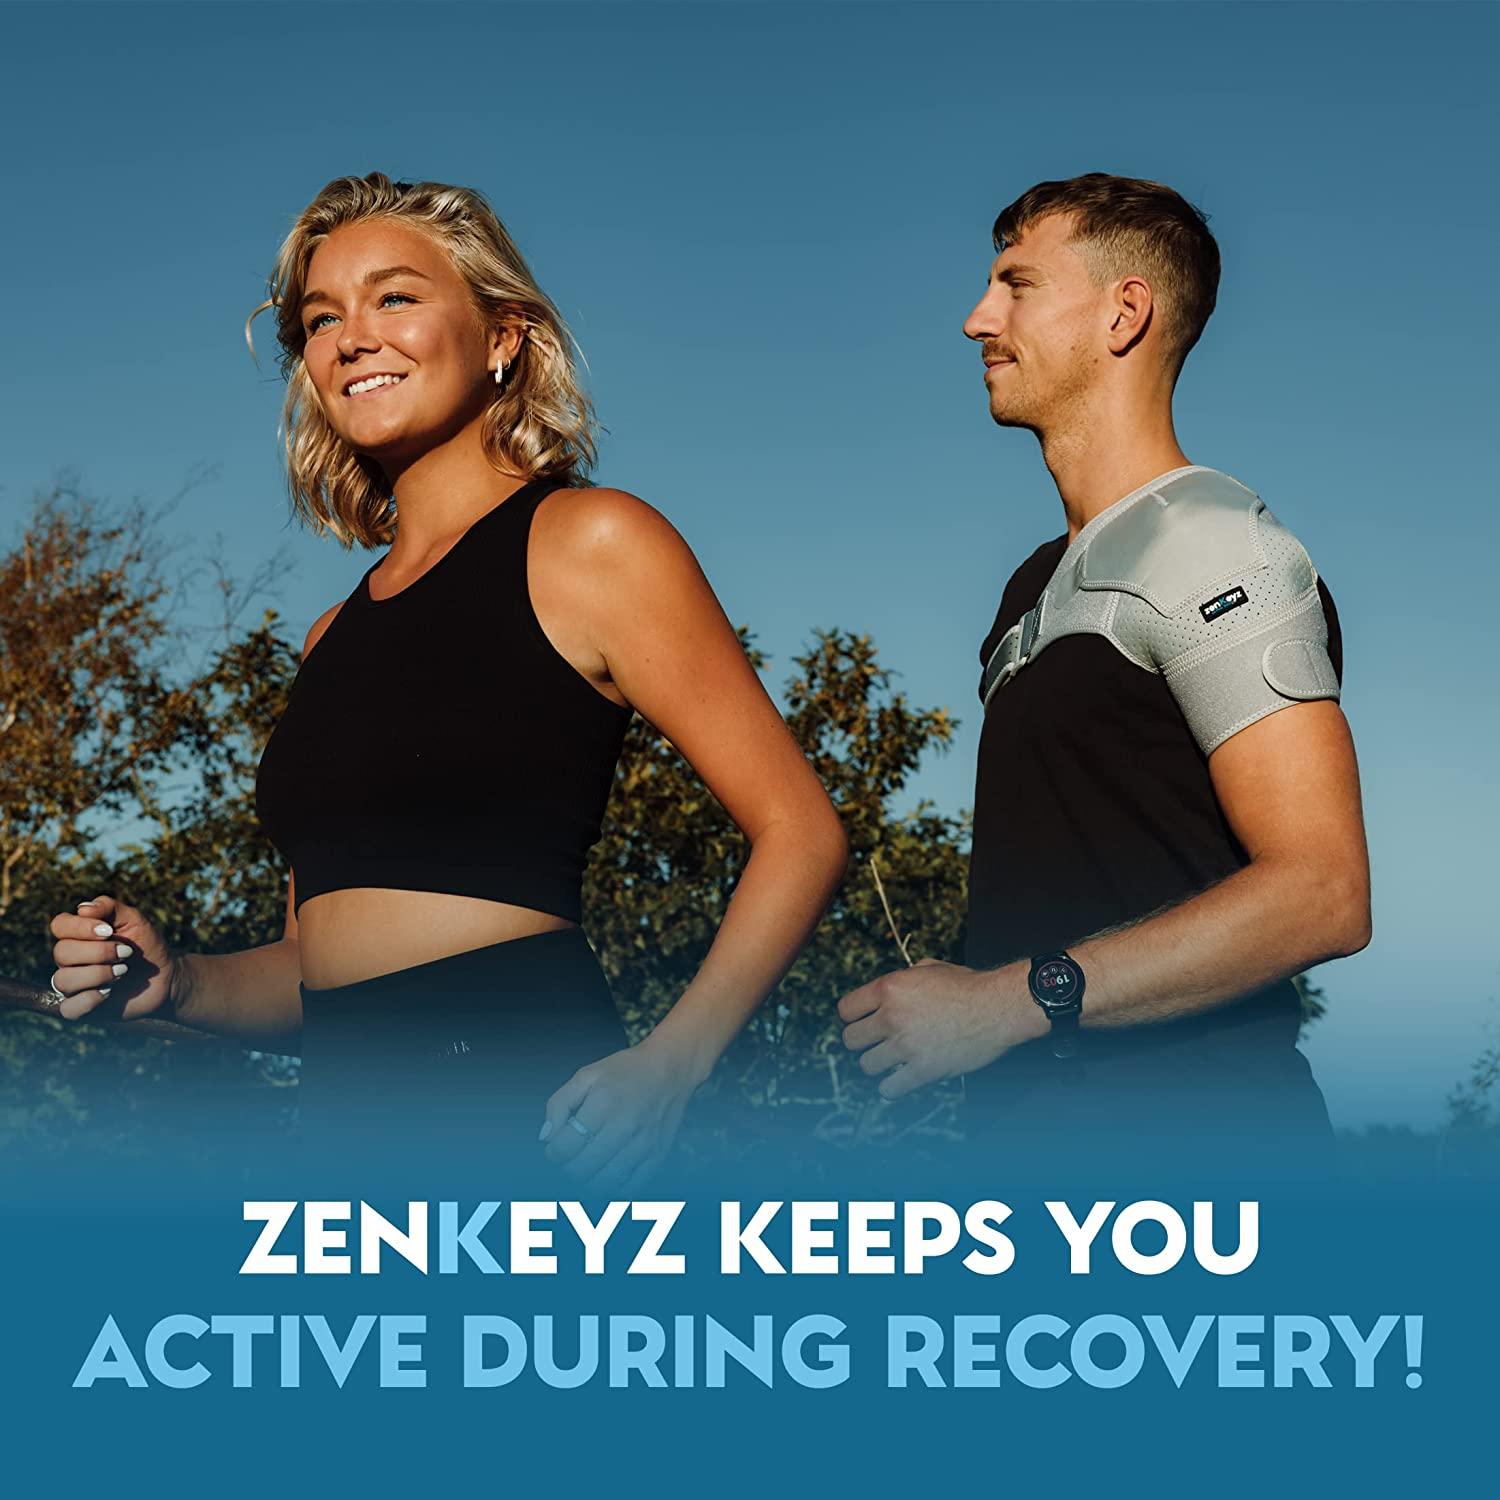  ZENKEYZ Shoulder Brace For Men & Women, Shoulder Immobilizer  For Torn Rotator Cuff, Tendonitis, Dislocation, Pain, Neoprene Shoulder  Compression Sleeve Wrap